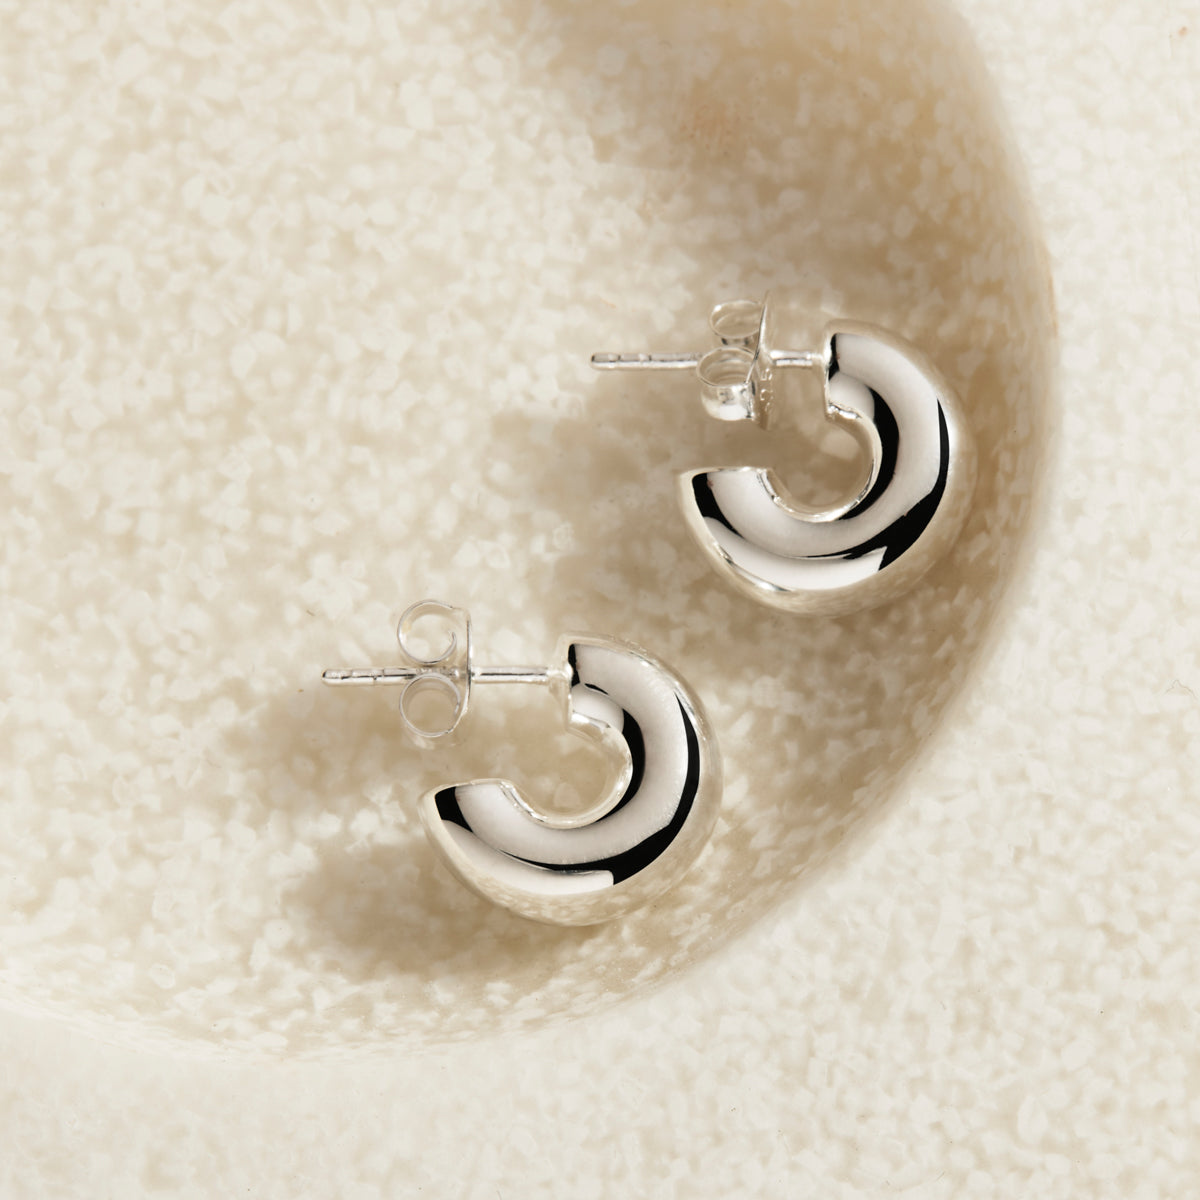 5mm x 15mm half-hoop sterling silver earrings